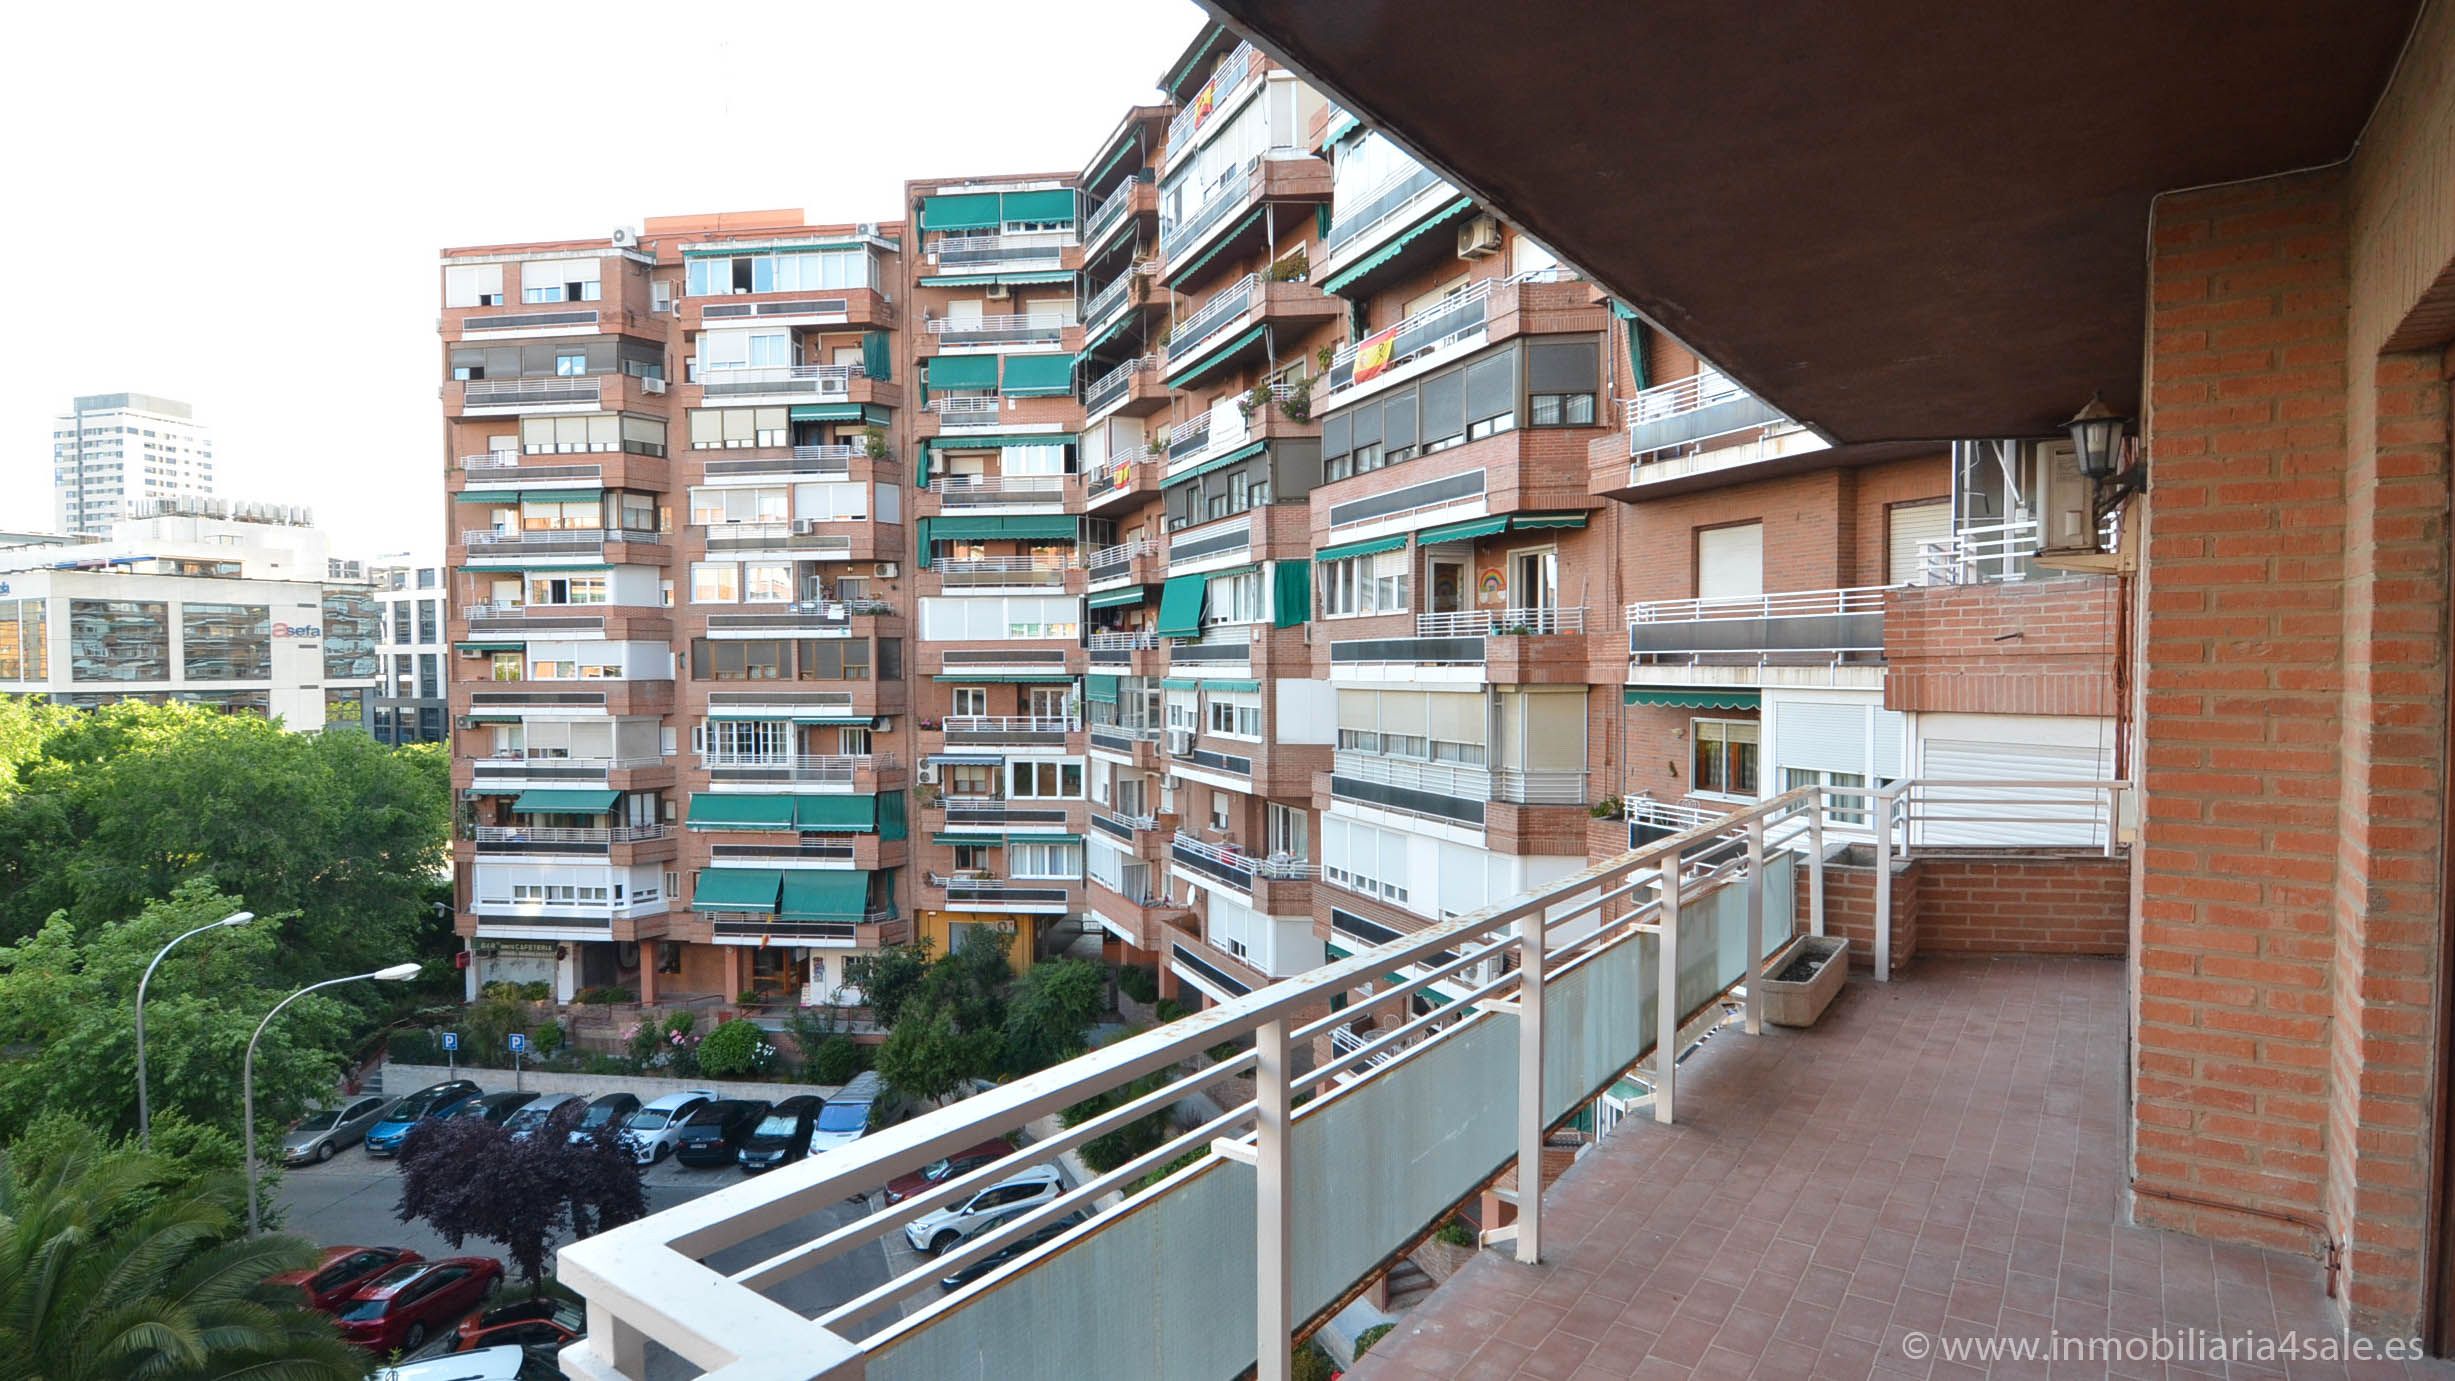 Rápido Regularmente Sierra Viviendas y casas de alquiler con terraza en Las Tablas, Madrid Capital |  fotocasa